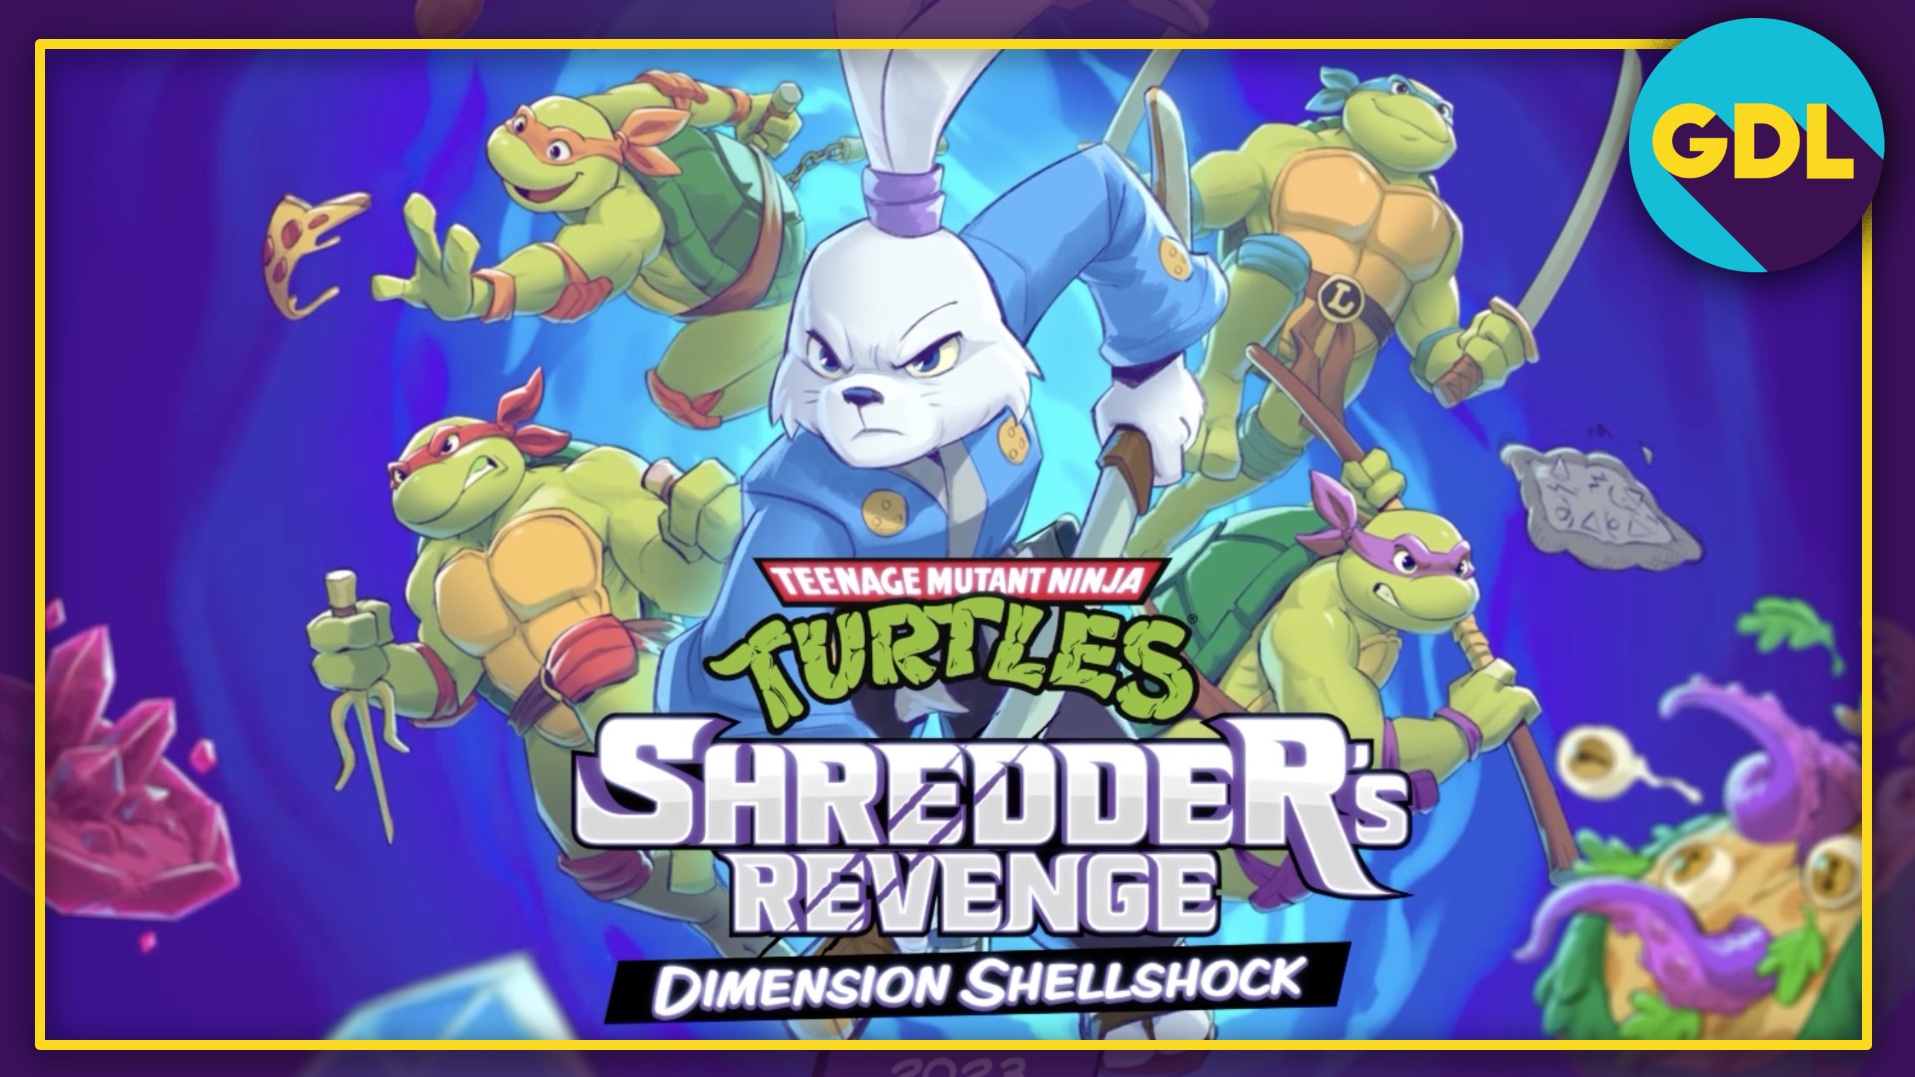 TMNT: Shredder's Revenge Dimension Shellshock DLC release date